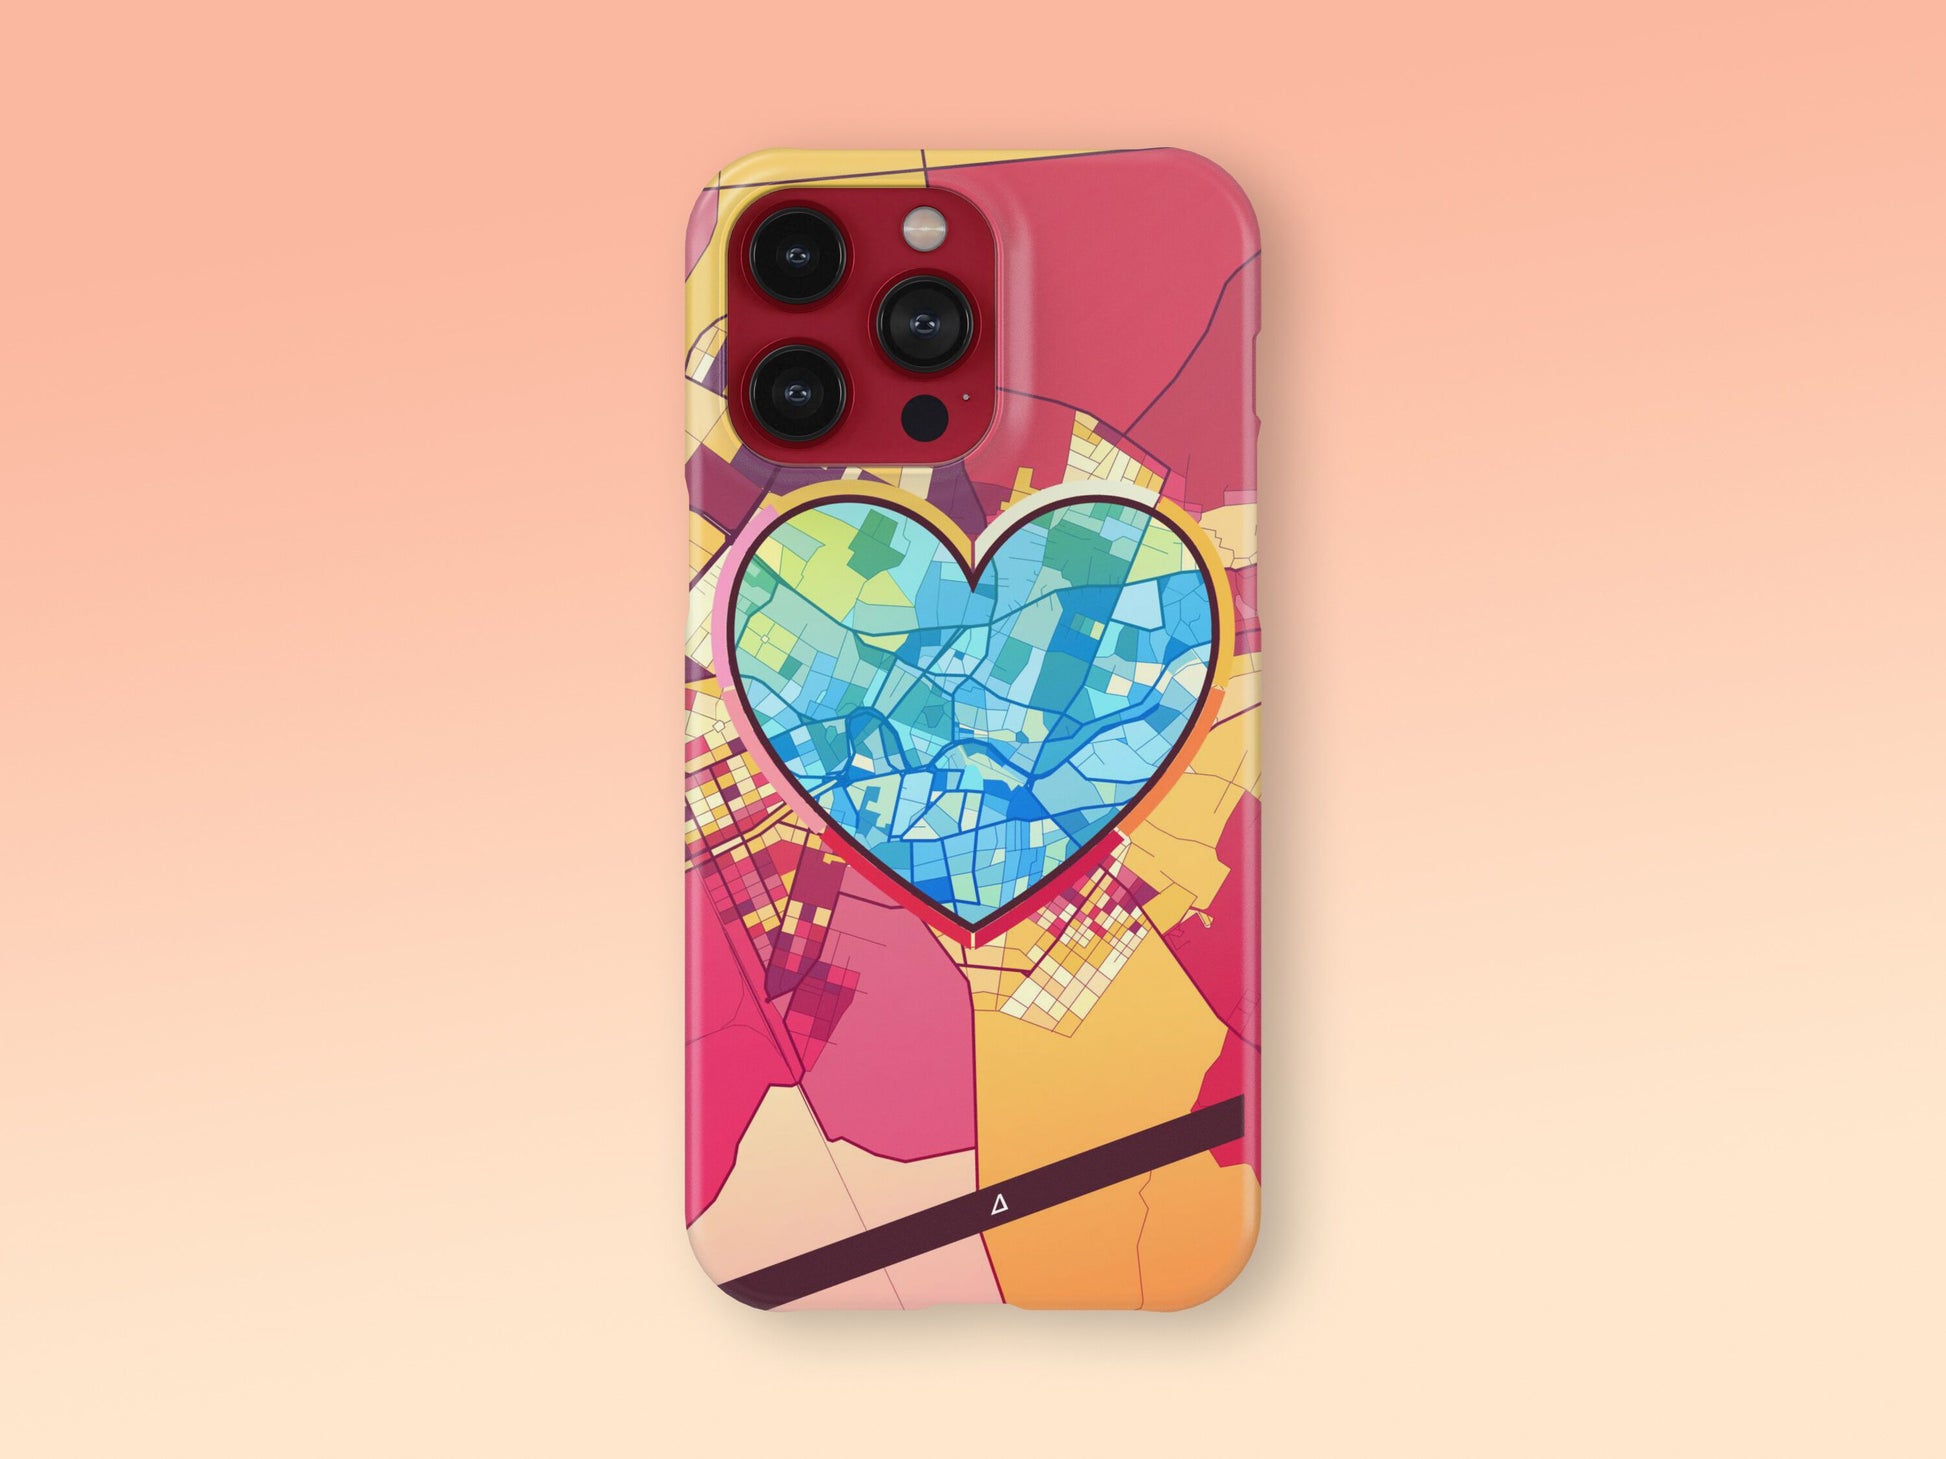 Κομοτηνη Ελλαδα slim phone case with colorful icon. Birthday, wedding or housewarming gift. Couple match cases. 2